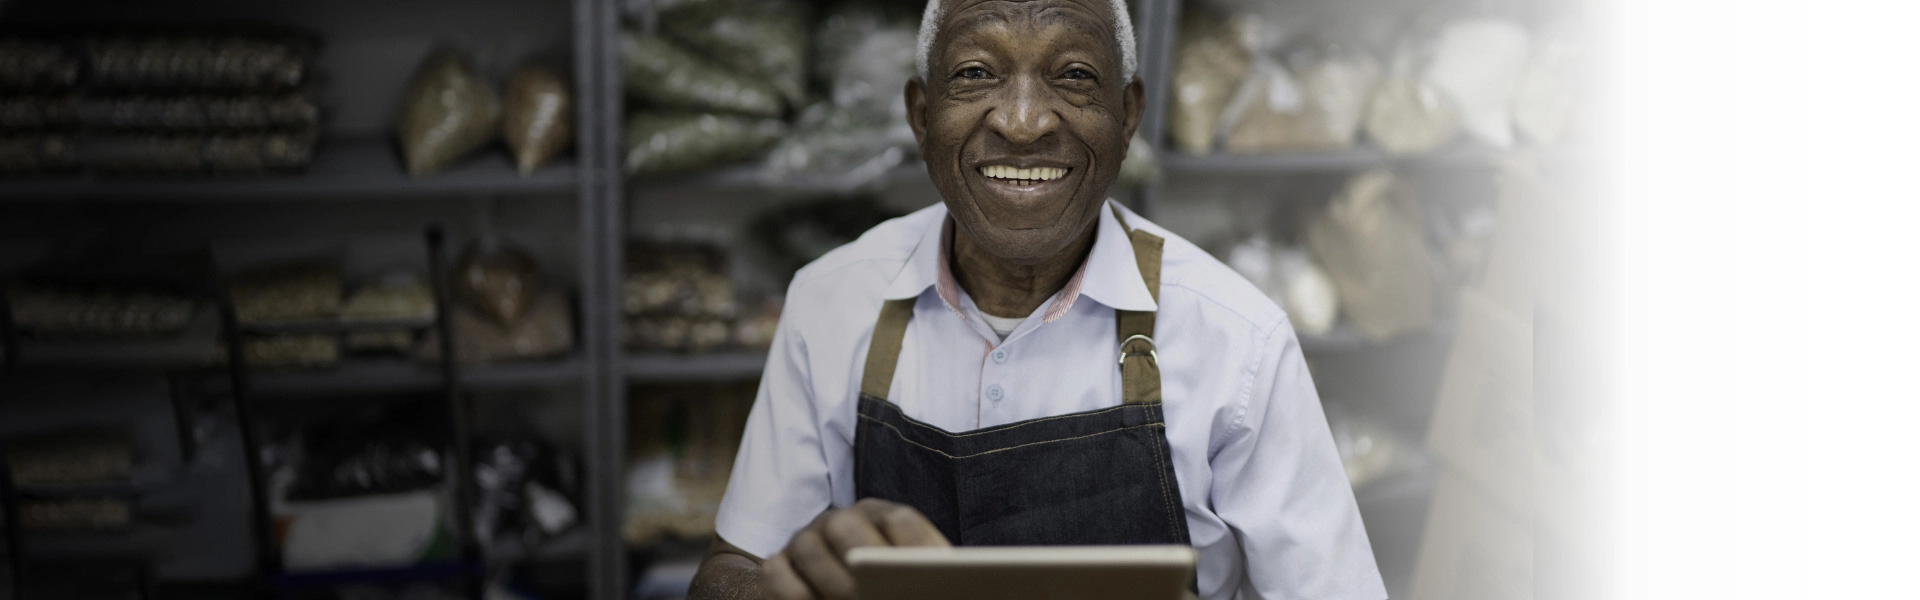 Homem negro sorrindo segurando um tablet.